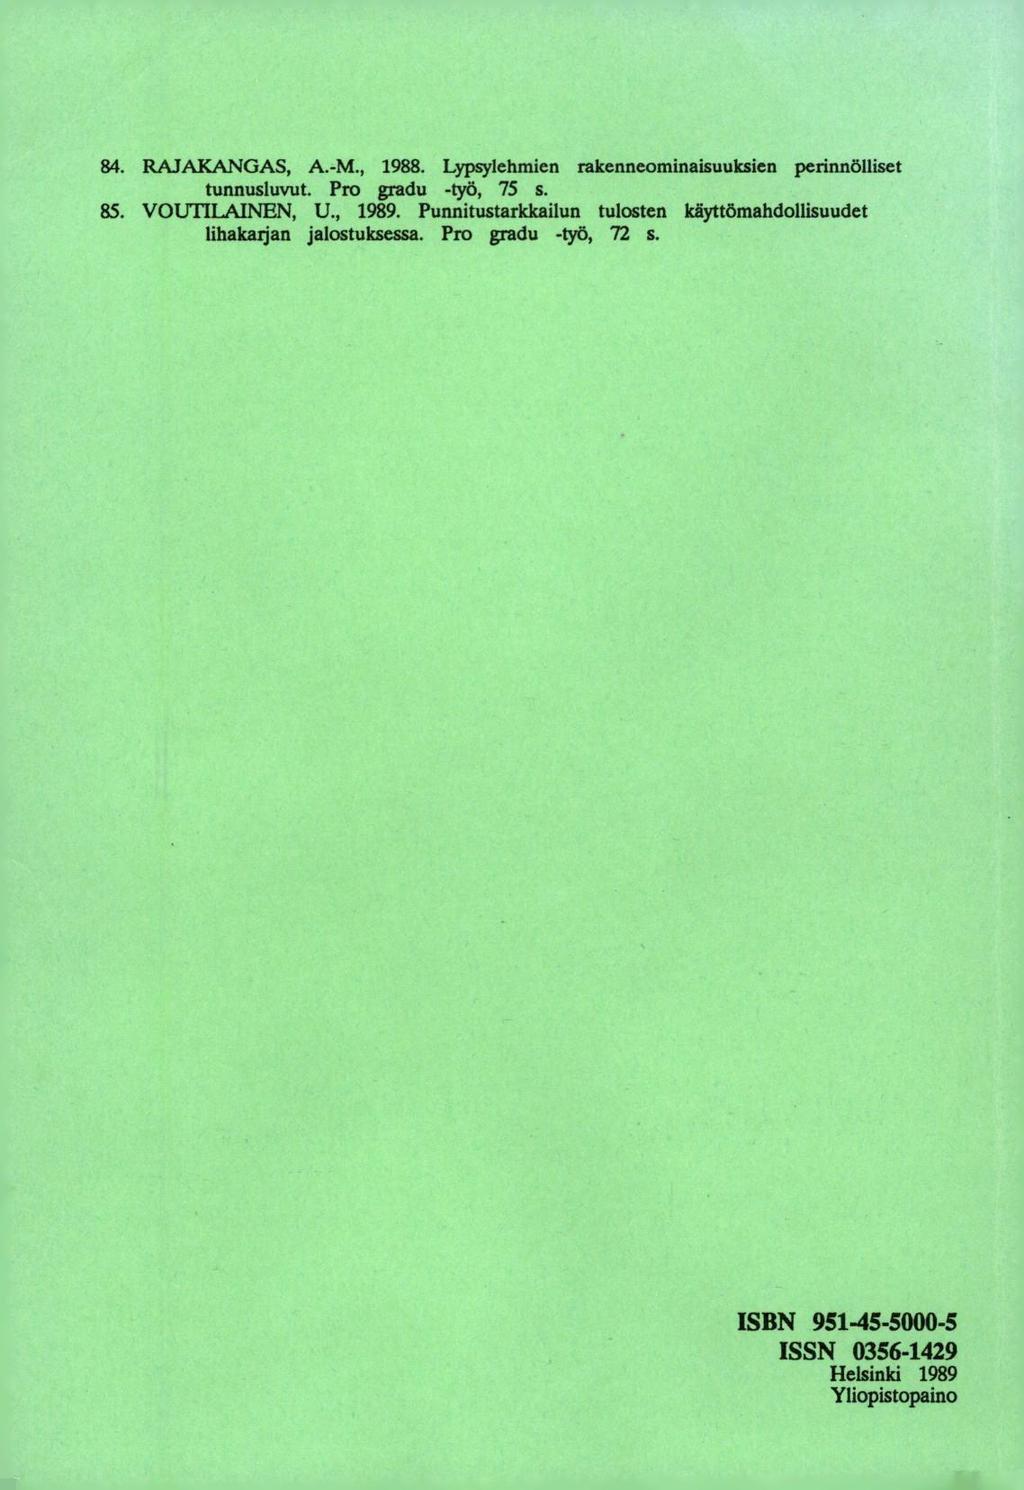 RAJAKANGAS, A.-M., 1988. Lypsylehmien rakenneominaisuuksien perinnölliset tunnusluvut. Pro gradu -työ, 75 s. VOUTILAINEN, U., 1989.